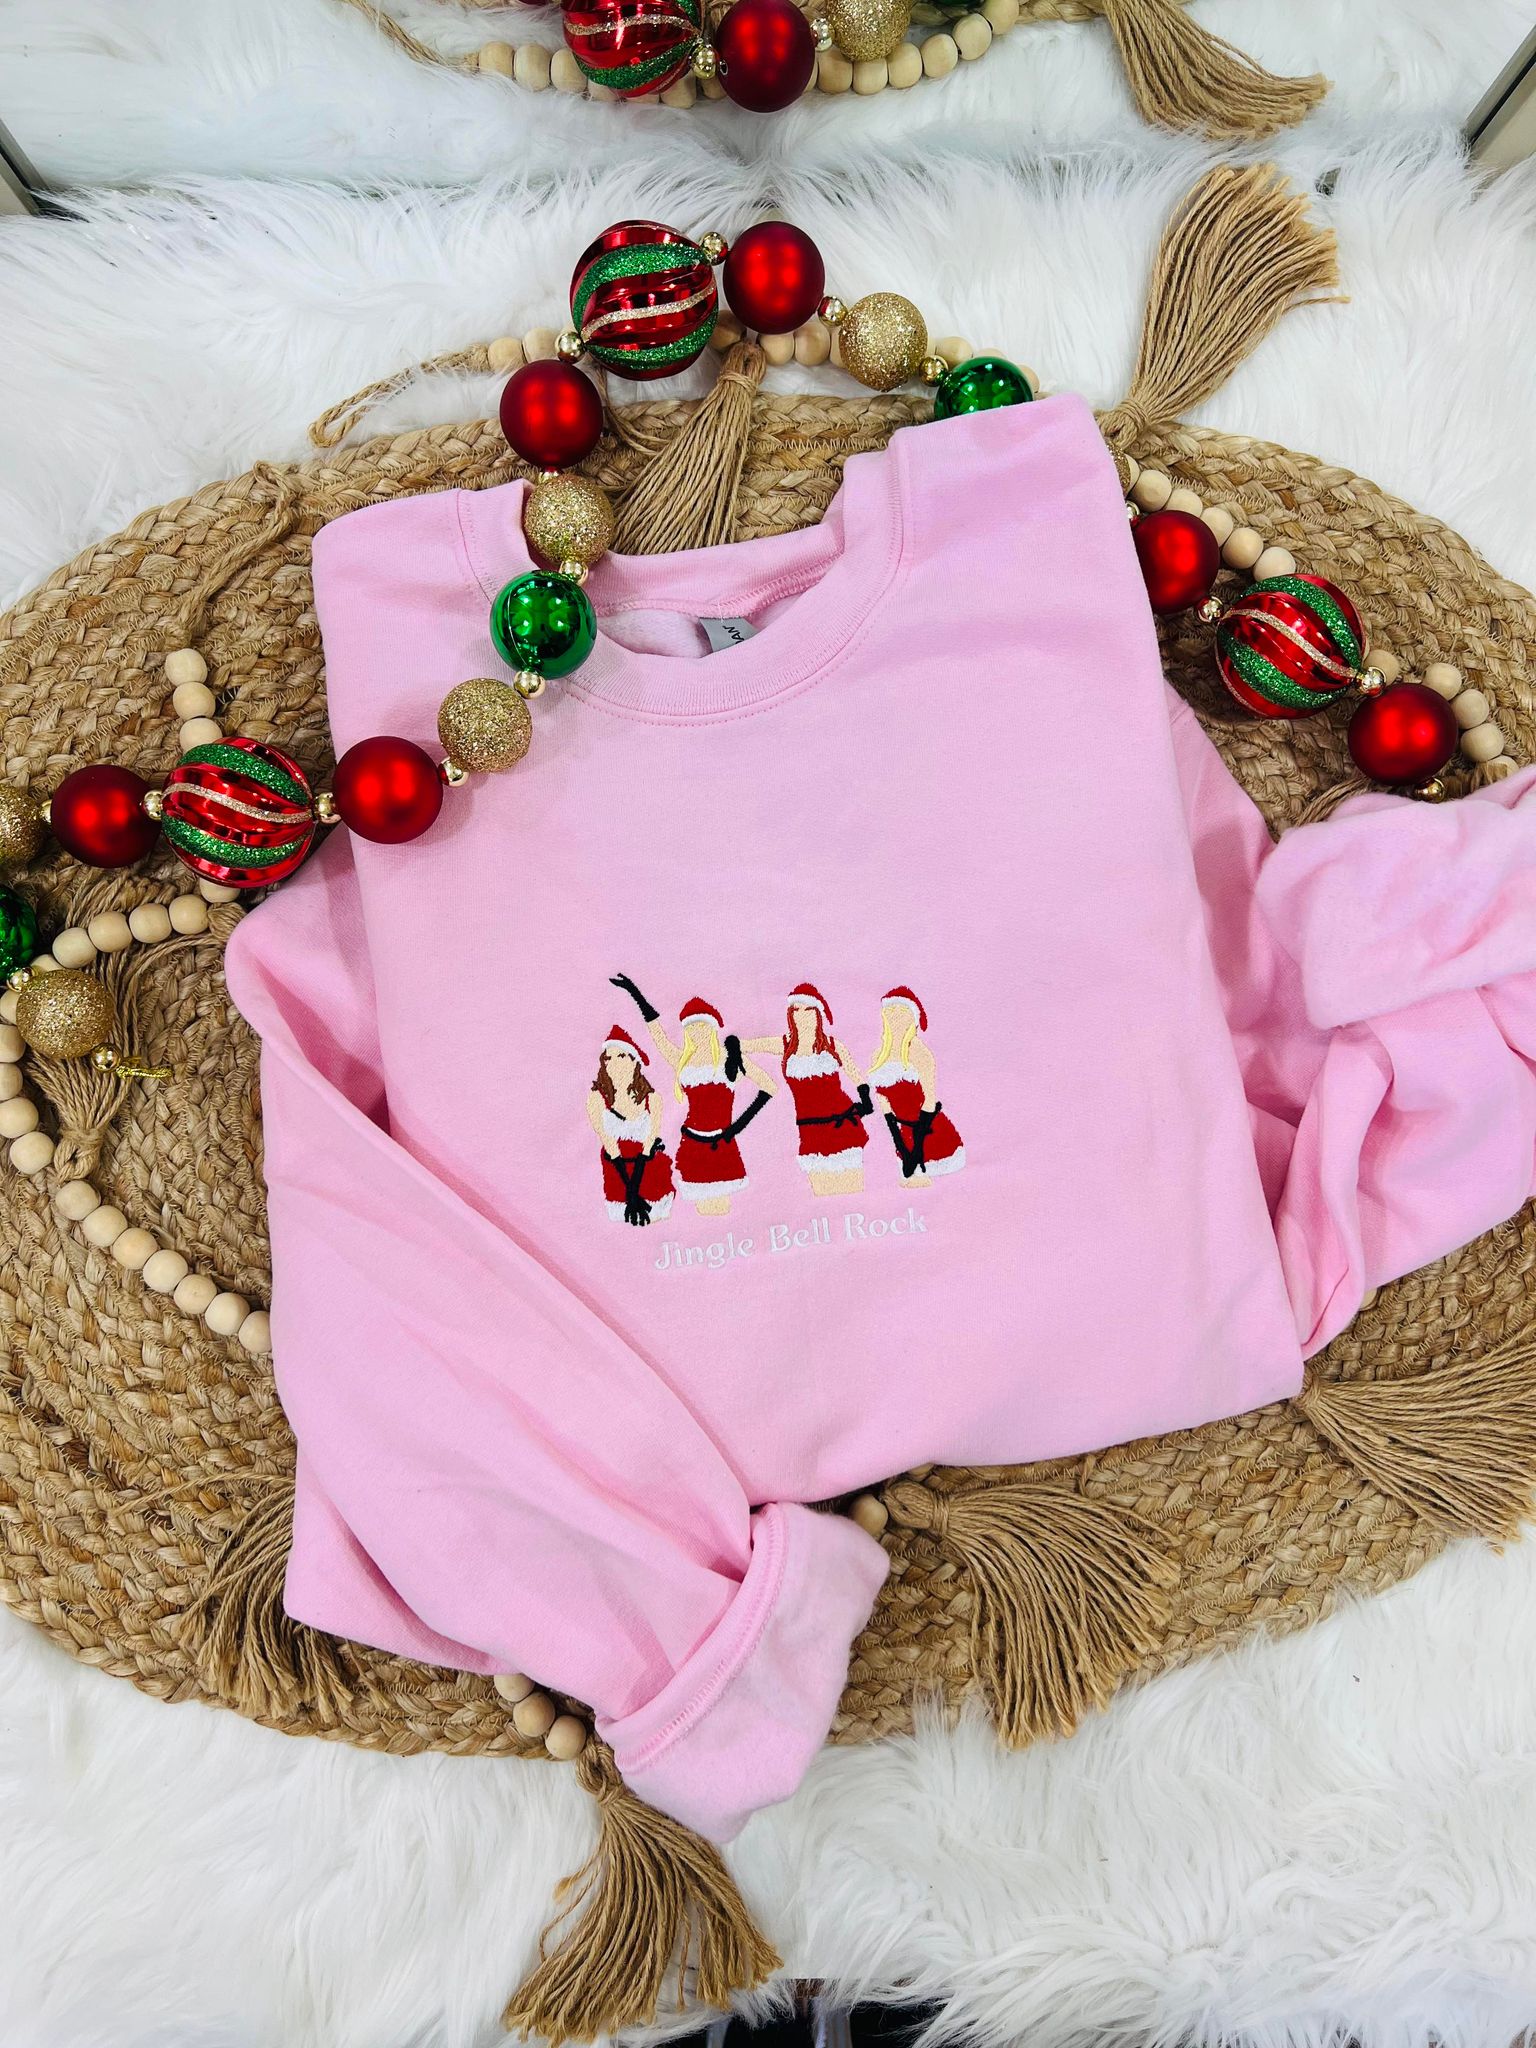 Jingle Bell Rock Mean Girls Sweatshirt